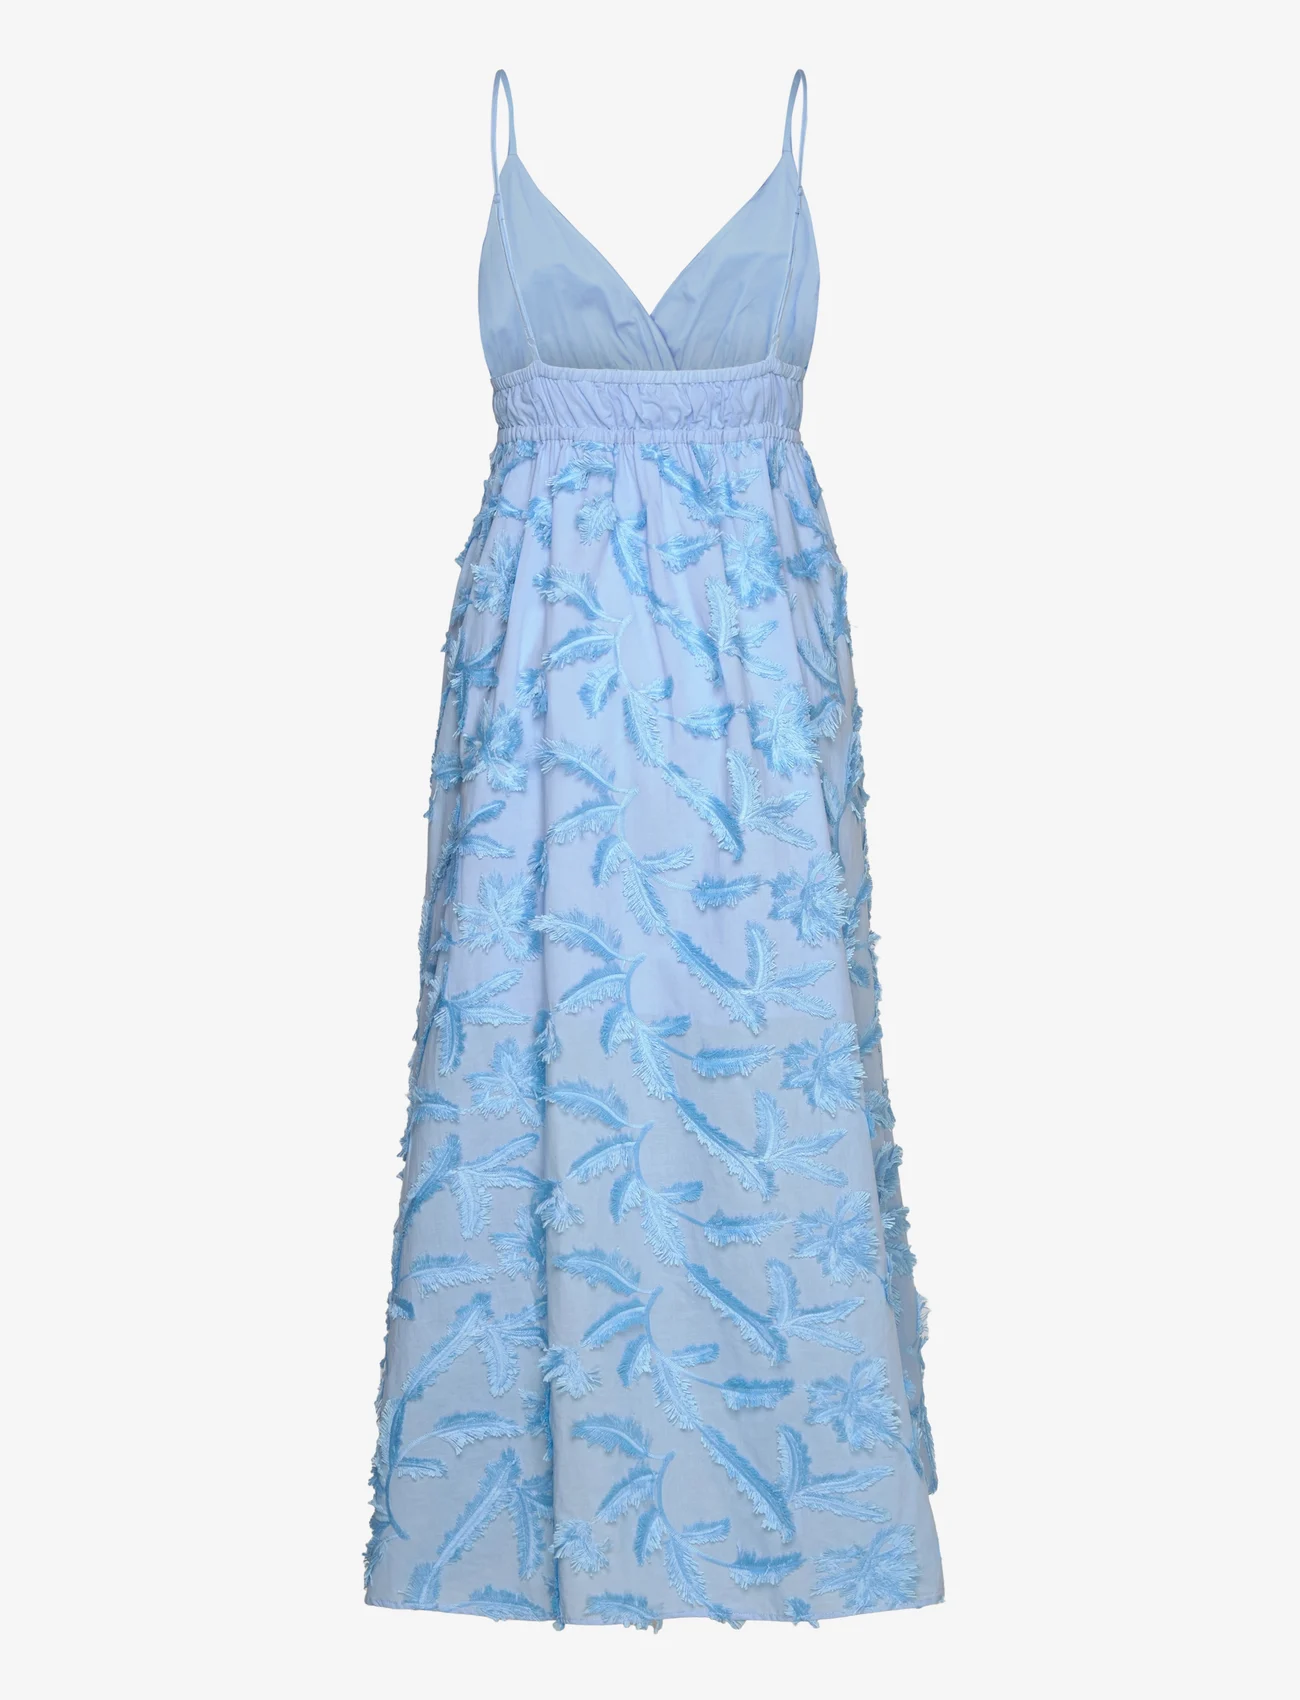 Twist & Tango - Marlee Dress - odzież imprezowa w cenach outletowych - blue hydrangea - 1